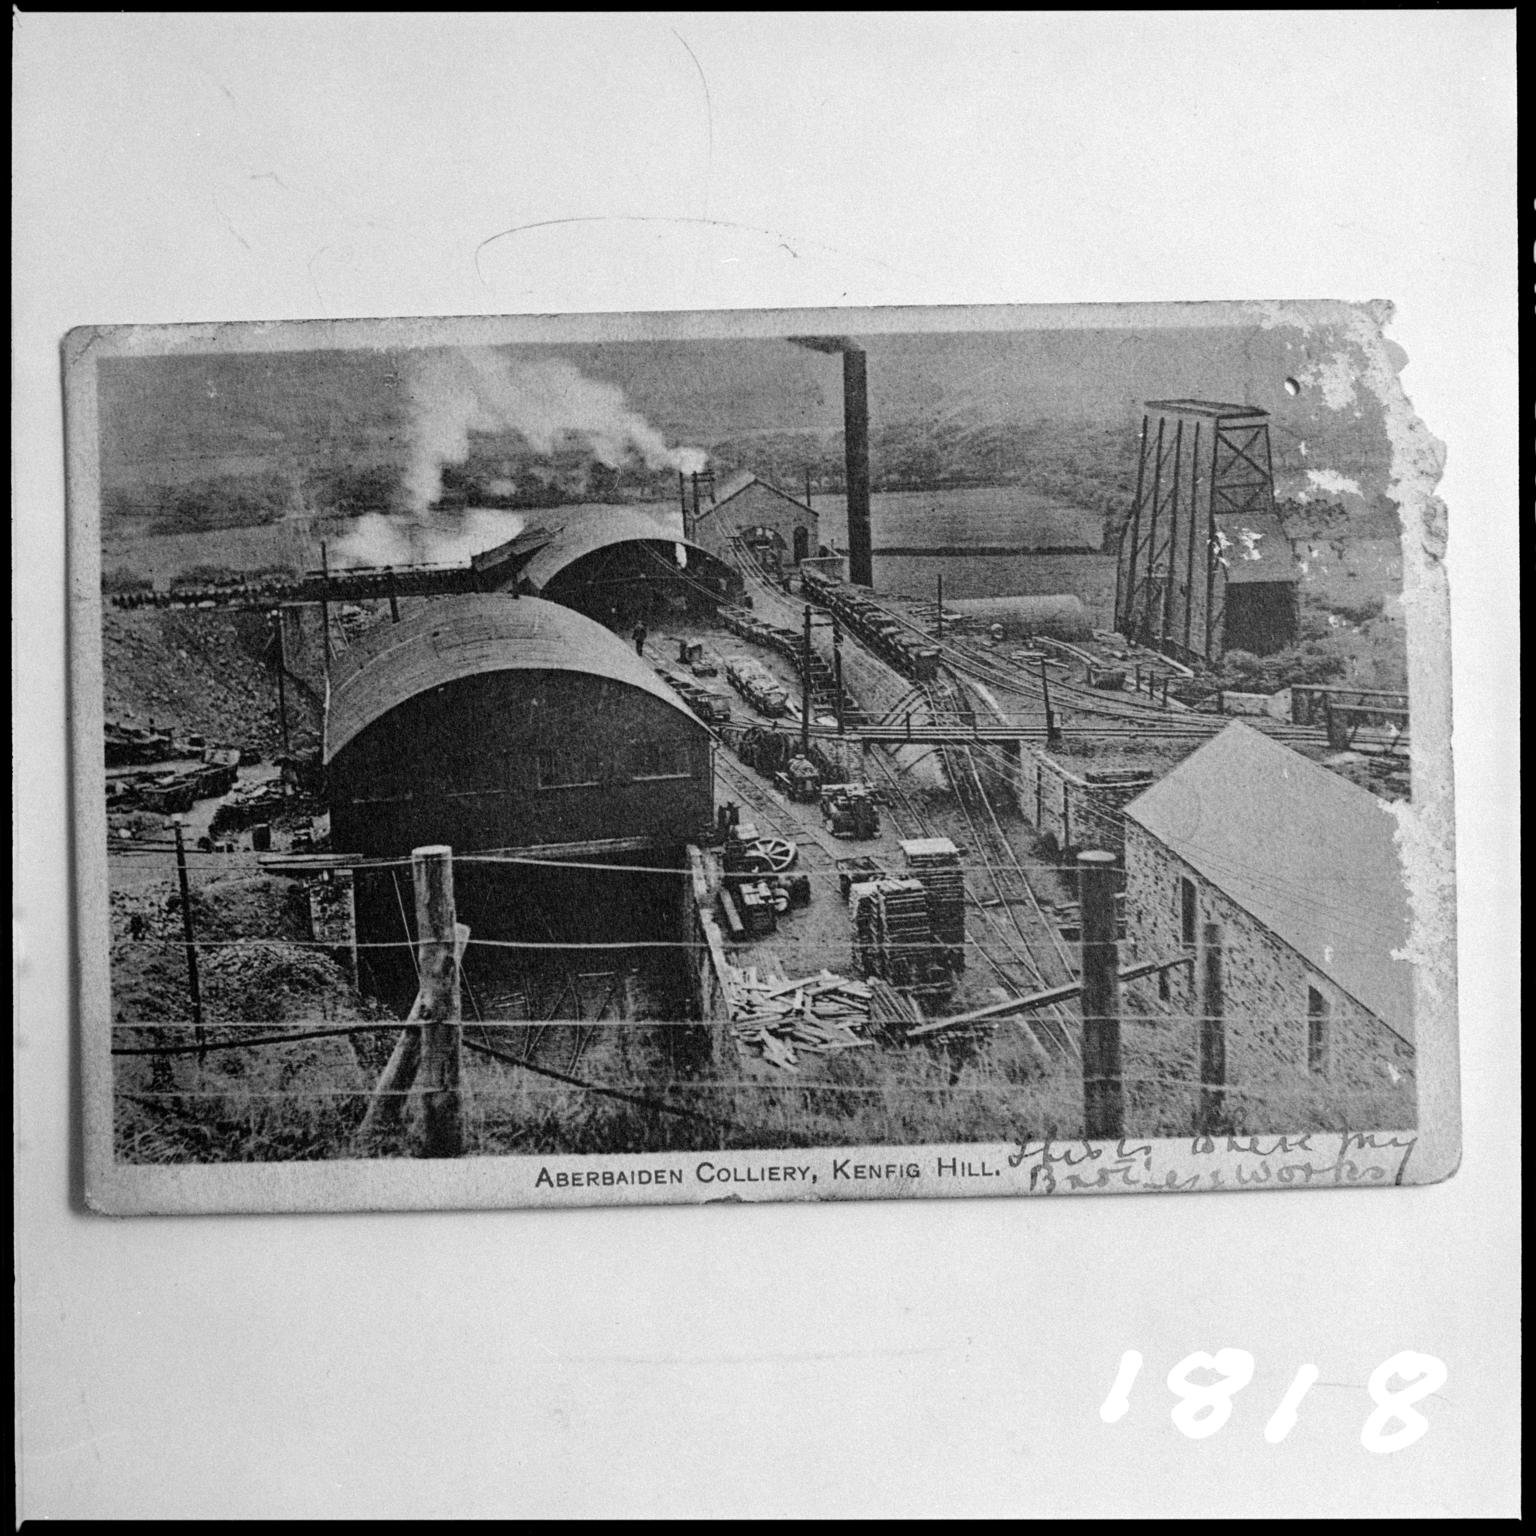 Aberbaiden Colliery, film negative